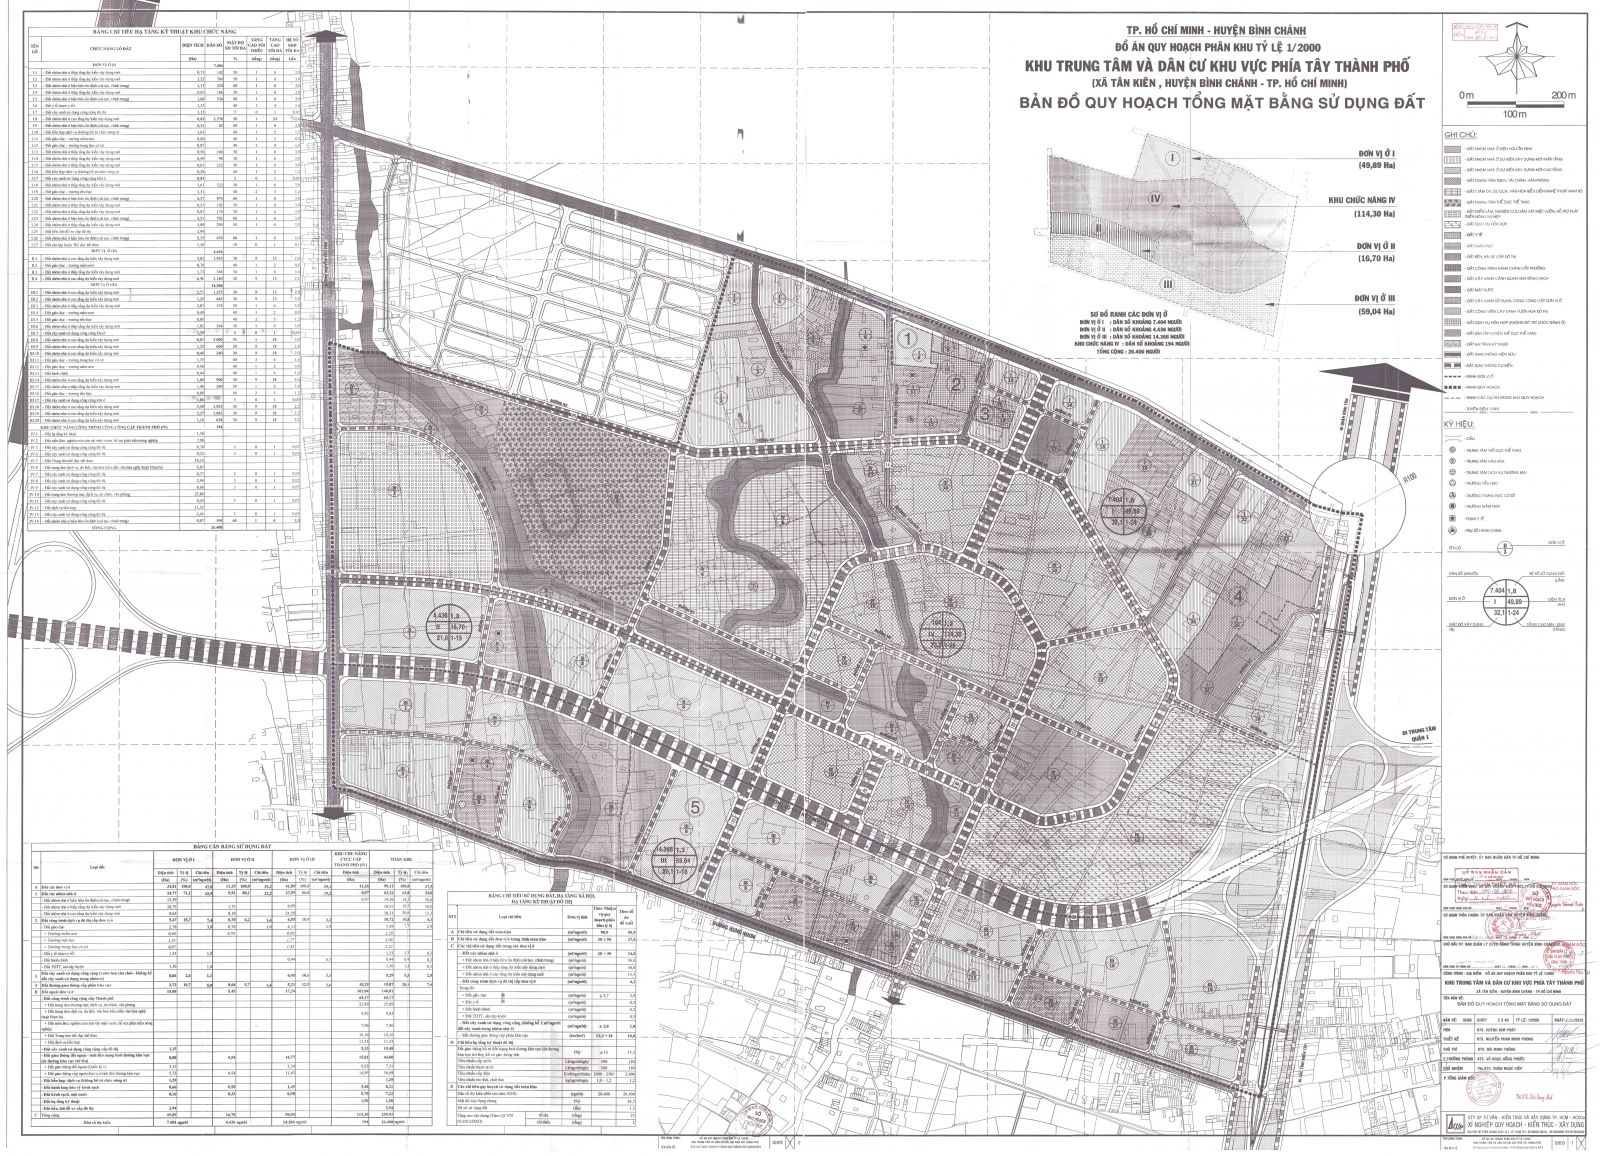 Bản đồ quy hoạch 1/2000 Khu trung tâm và dân cư khu vực phía Tây Thành phố, xã Tân Kiên, huyện Bình Chánh, Huyện Bình Chánh